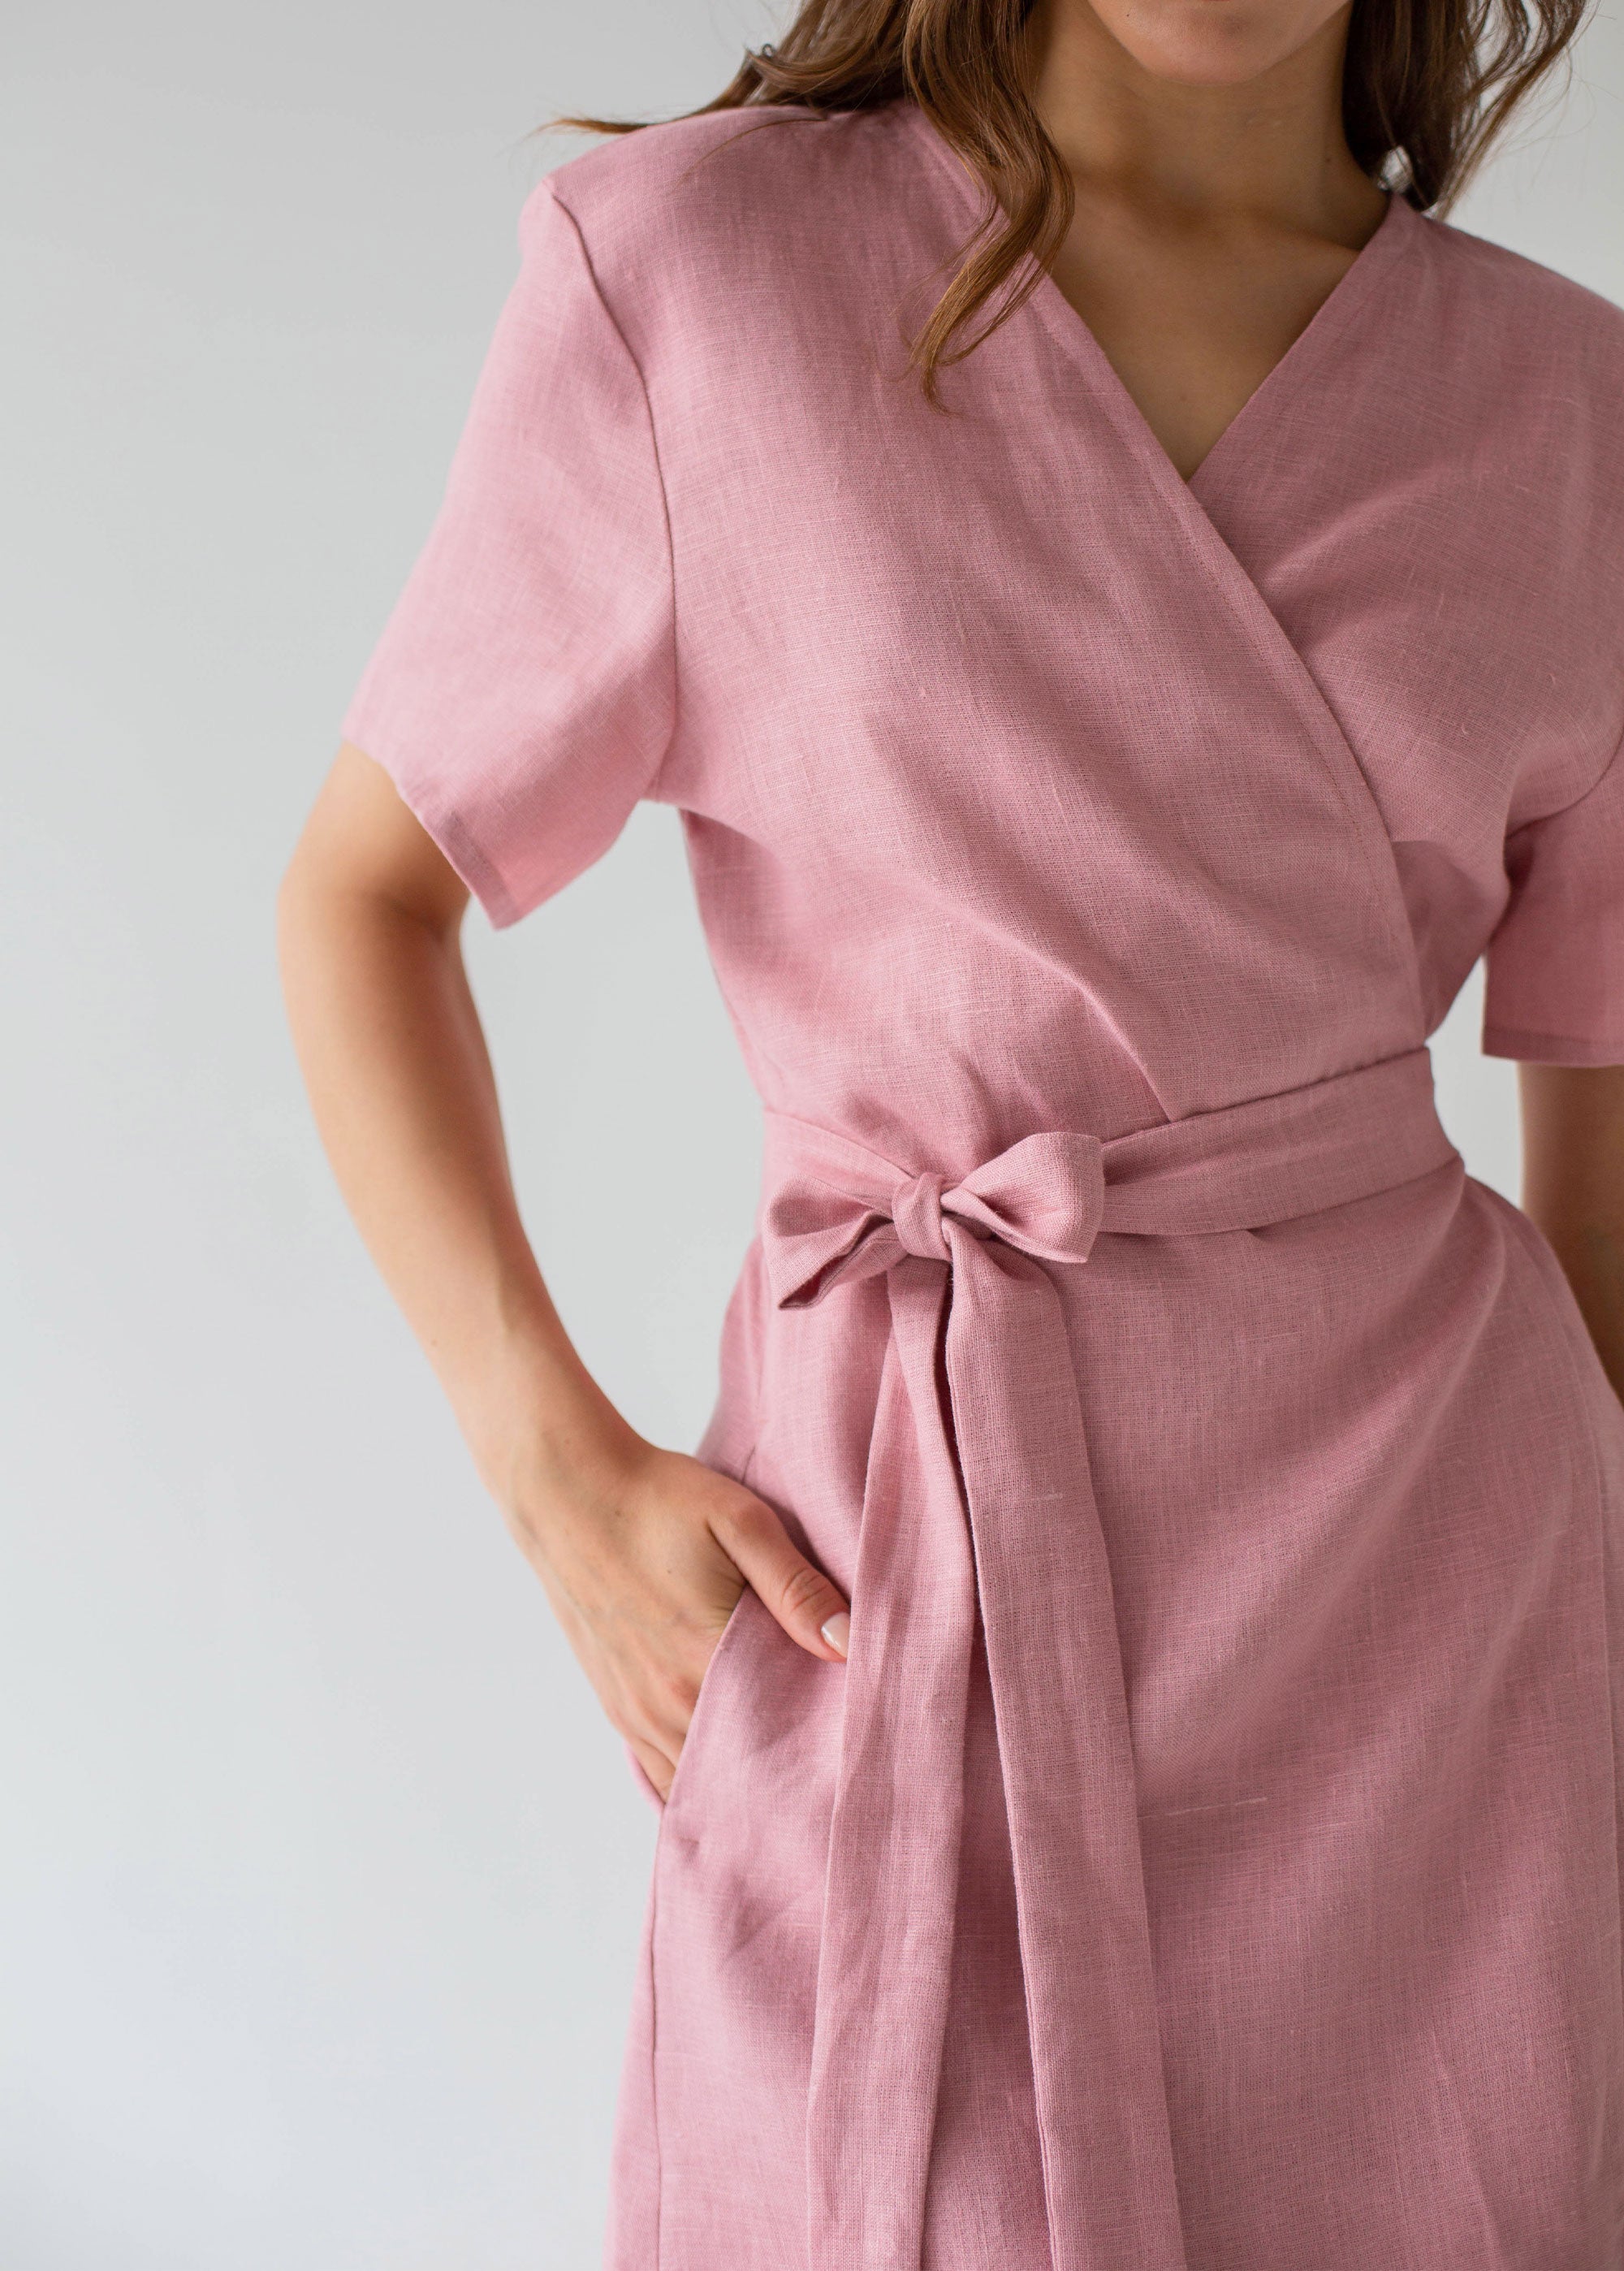 "Zoey" Pink Linen Dress